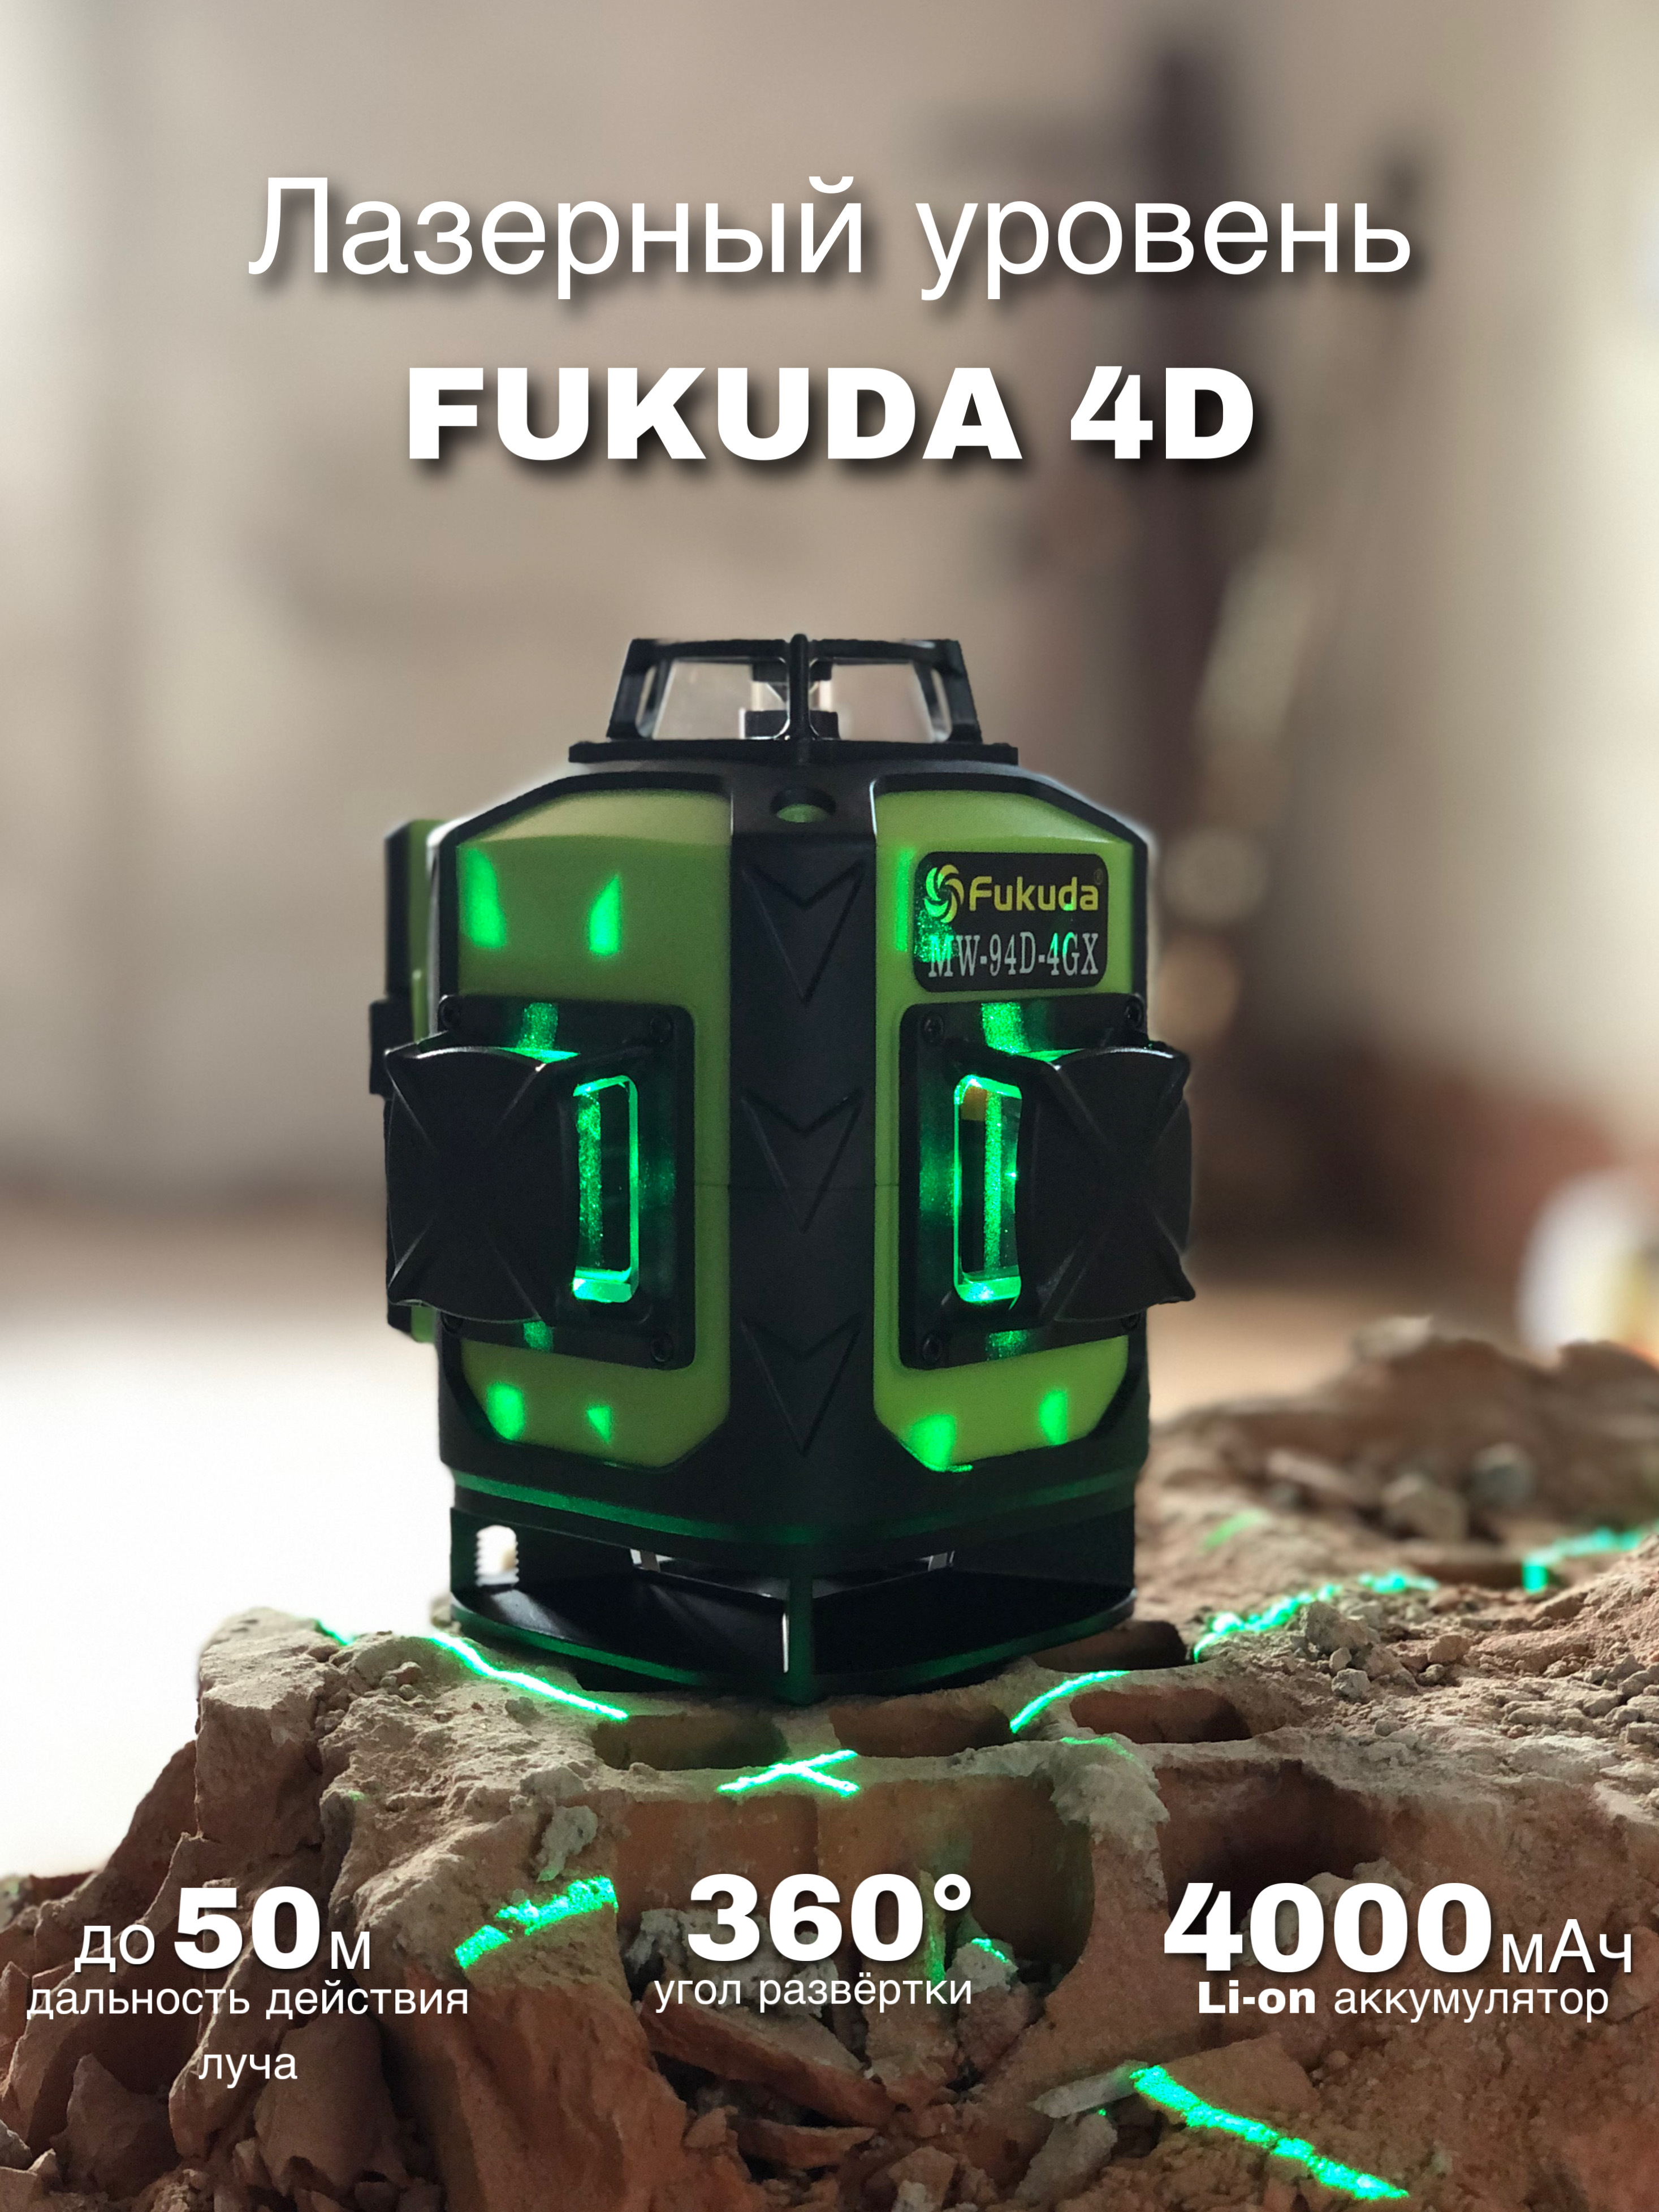 Лазерный уровень Fukuda 360. Фукуда лазерный уровень Ek 23. Fukuda mw94d-1.